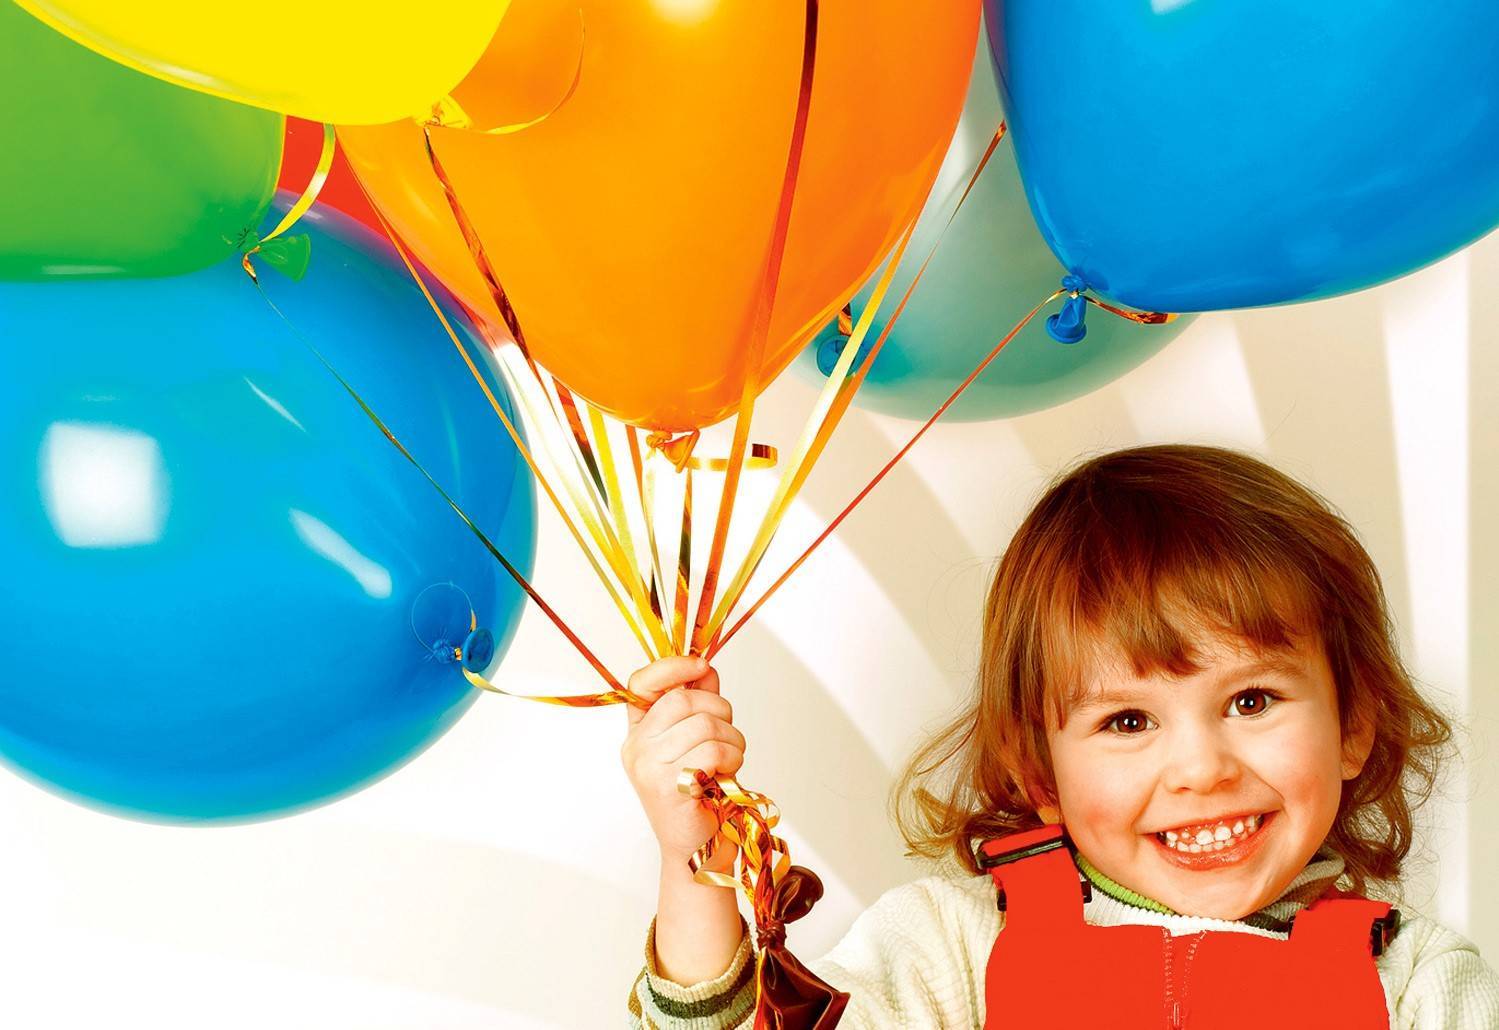 Развлечения на день рождения, или Как разнообразить детский праздник?